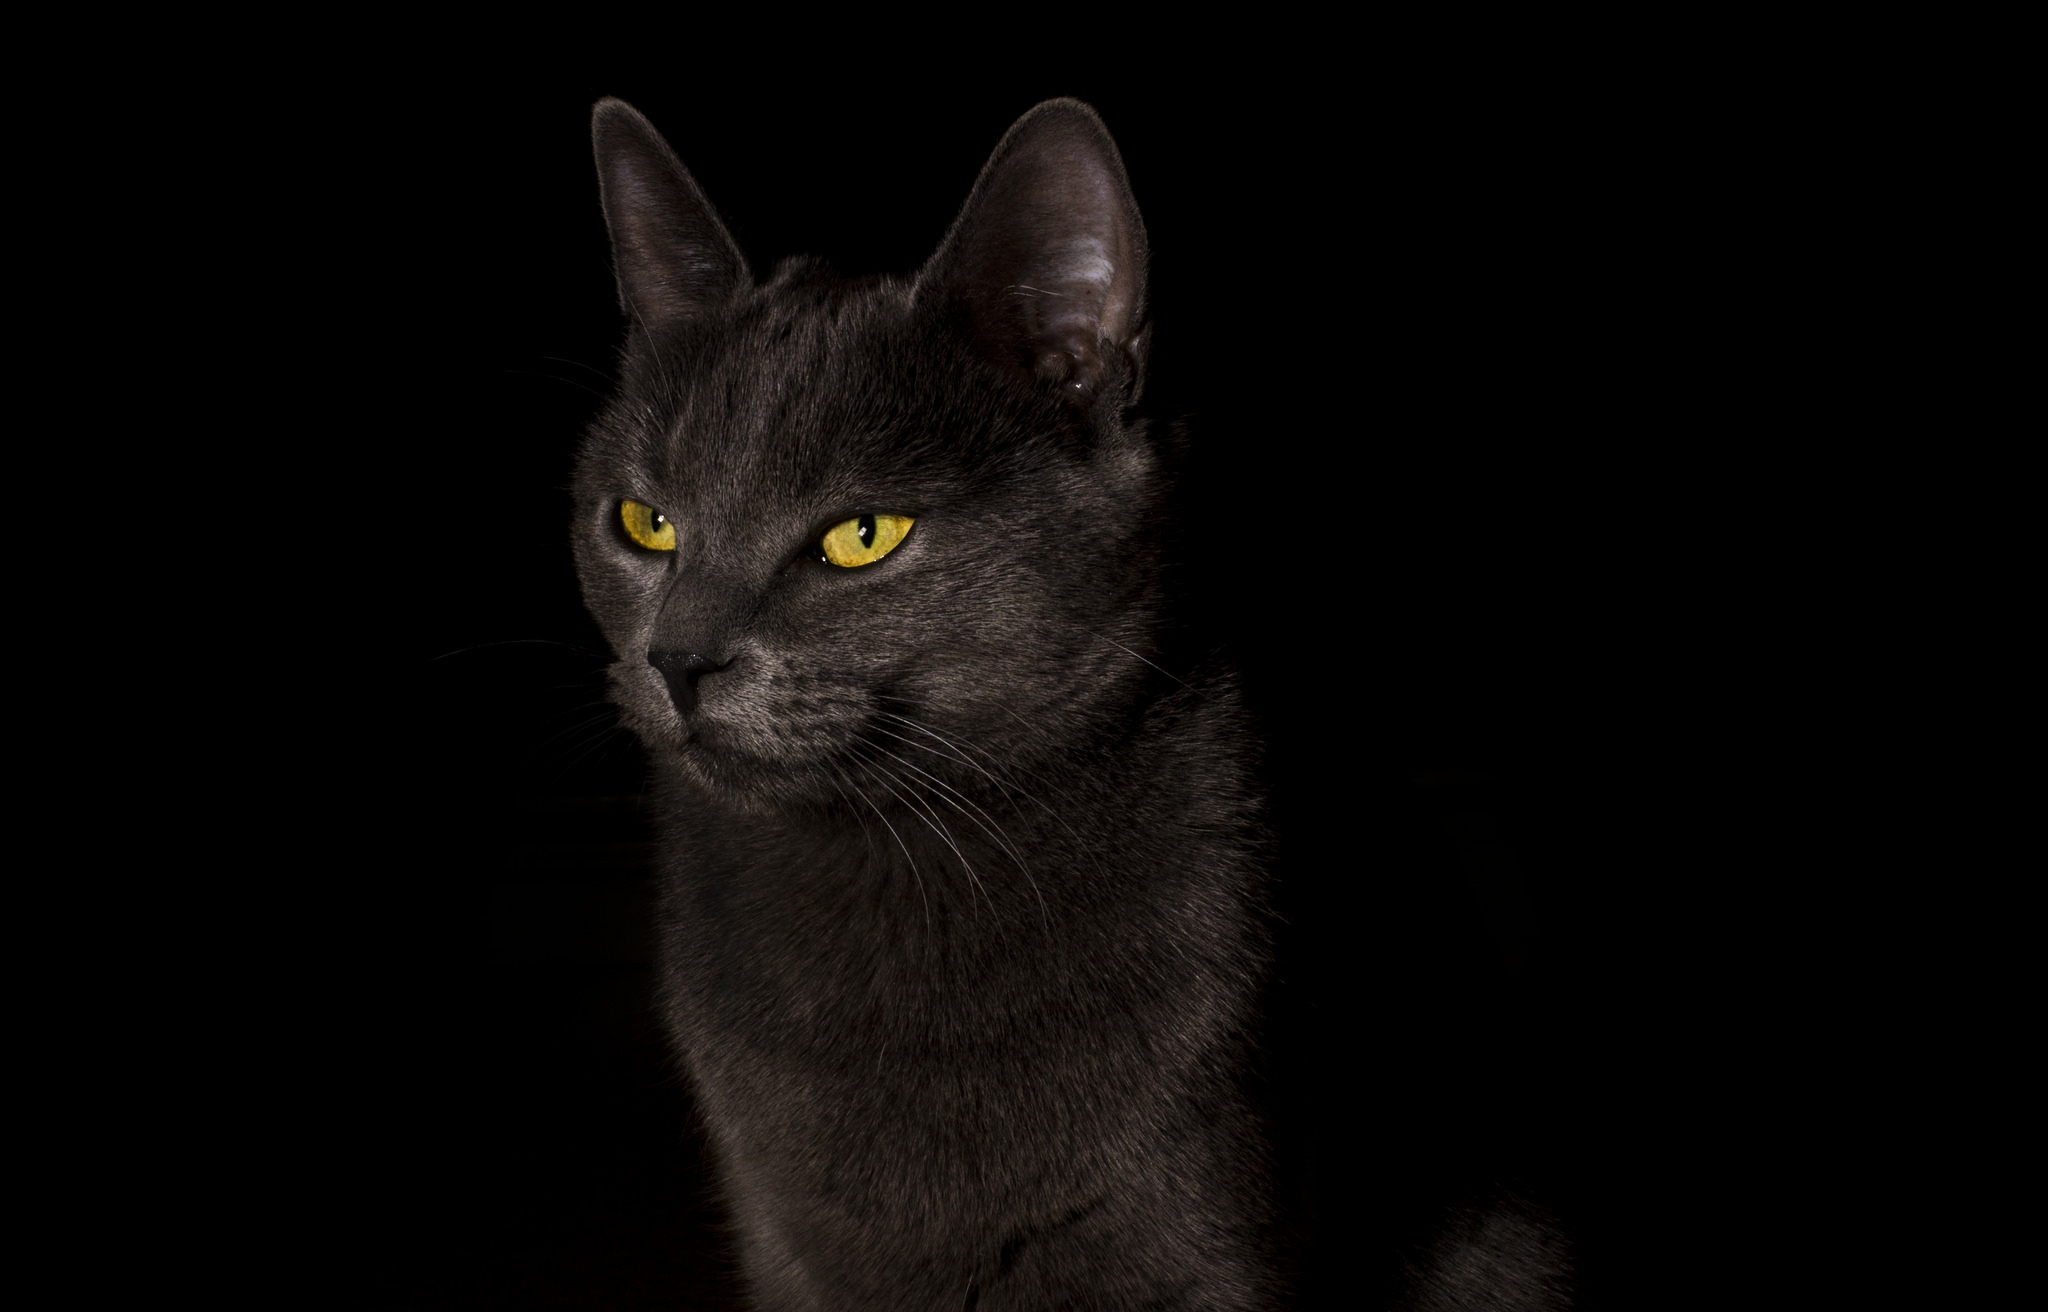 Черное фото на весь экран. Черные обои. Обои на рабочий стол кошки. Фото кота на черном фоне. Черный фон картинка.